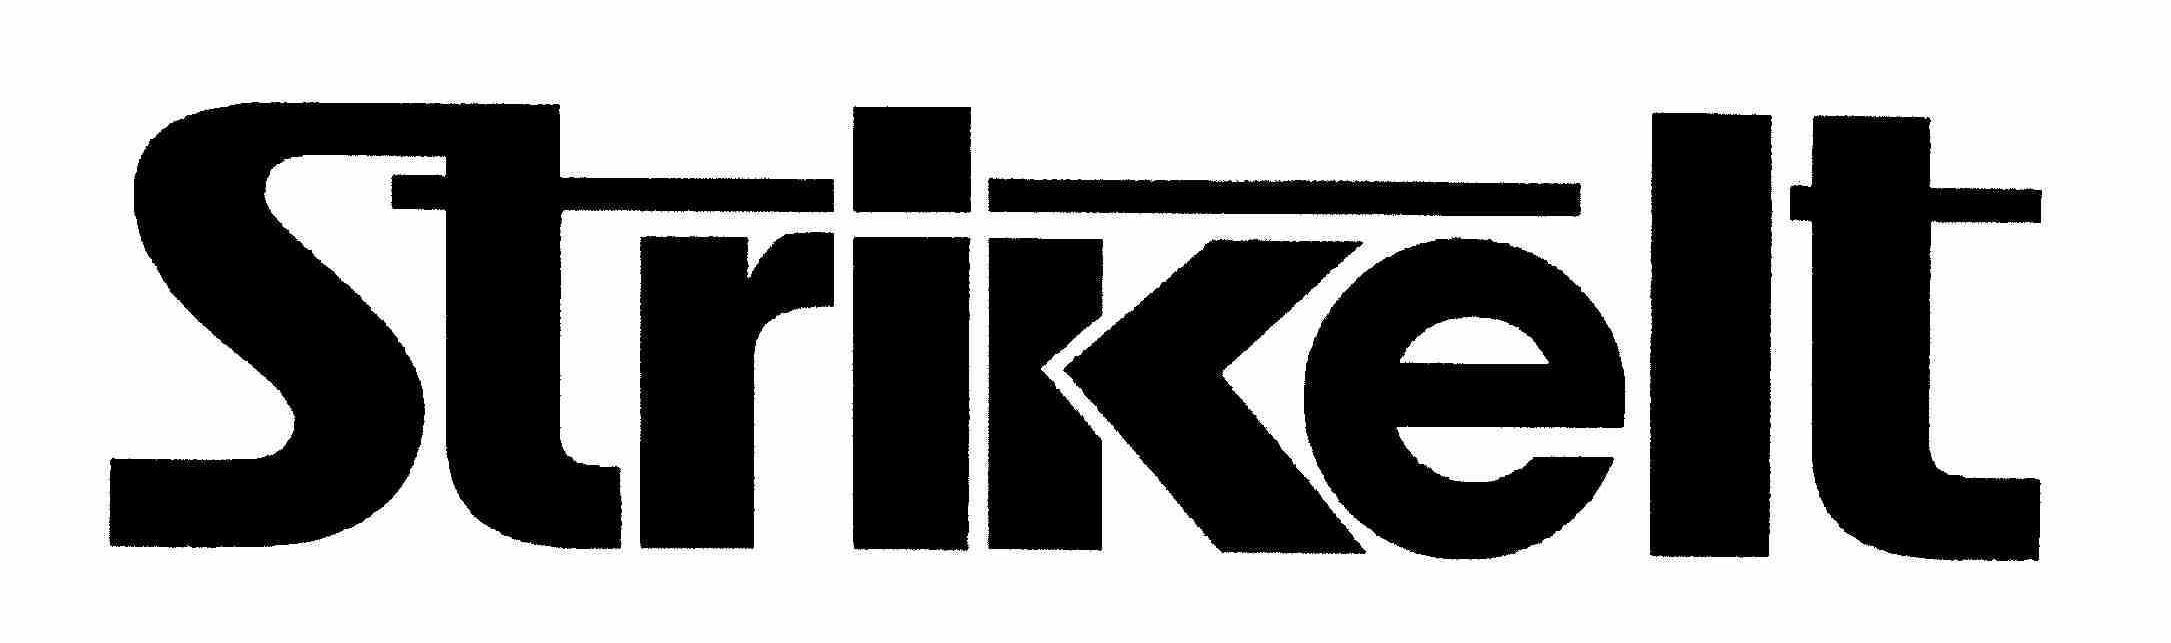 Trademark Logo STRIKEIT